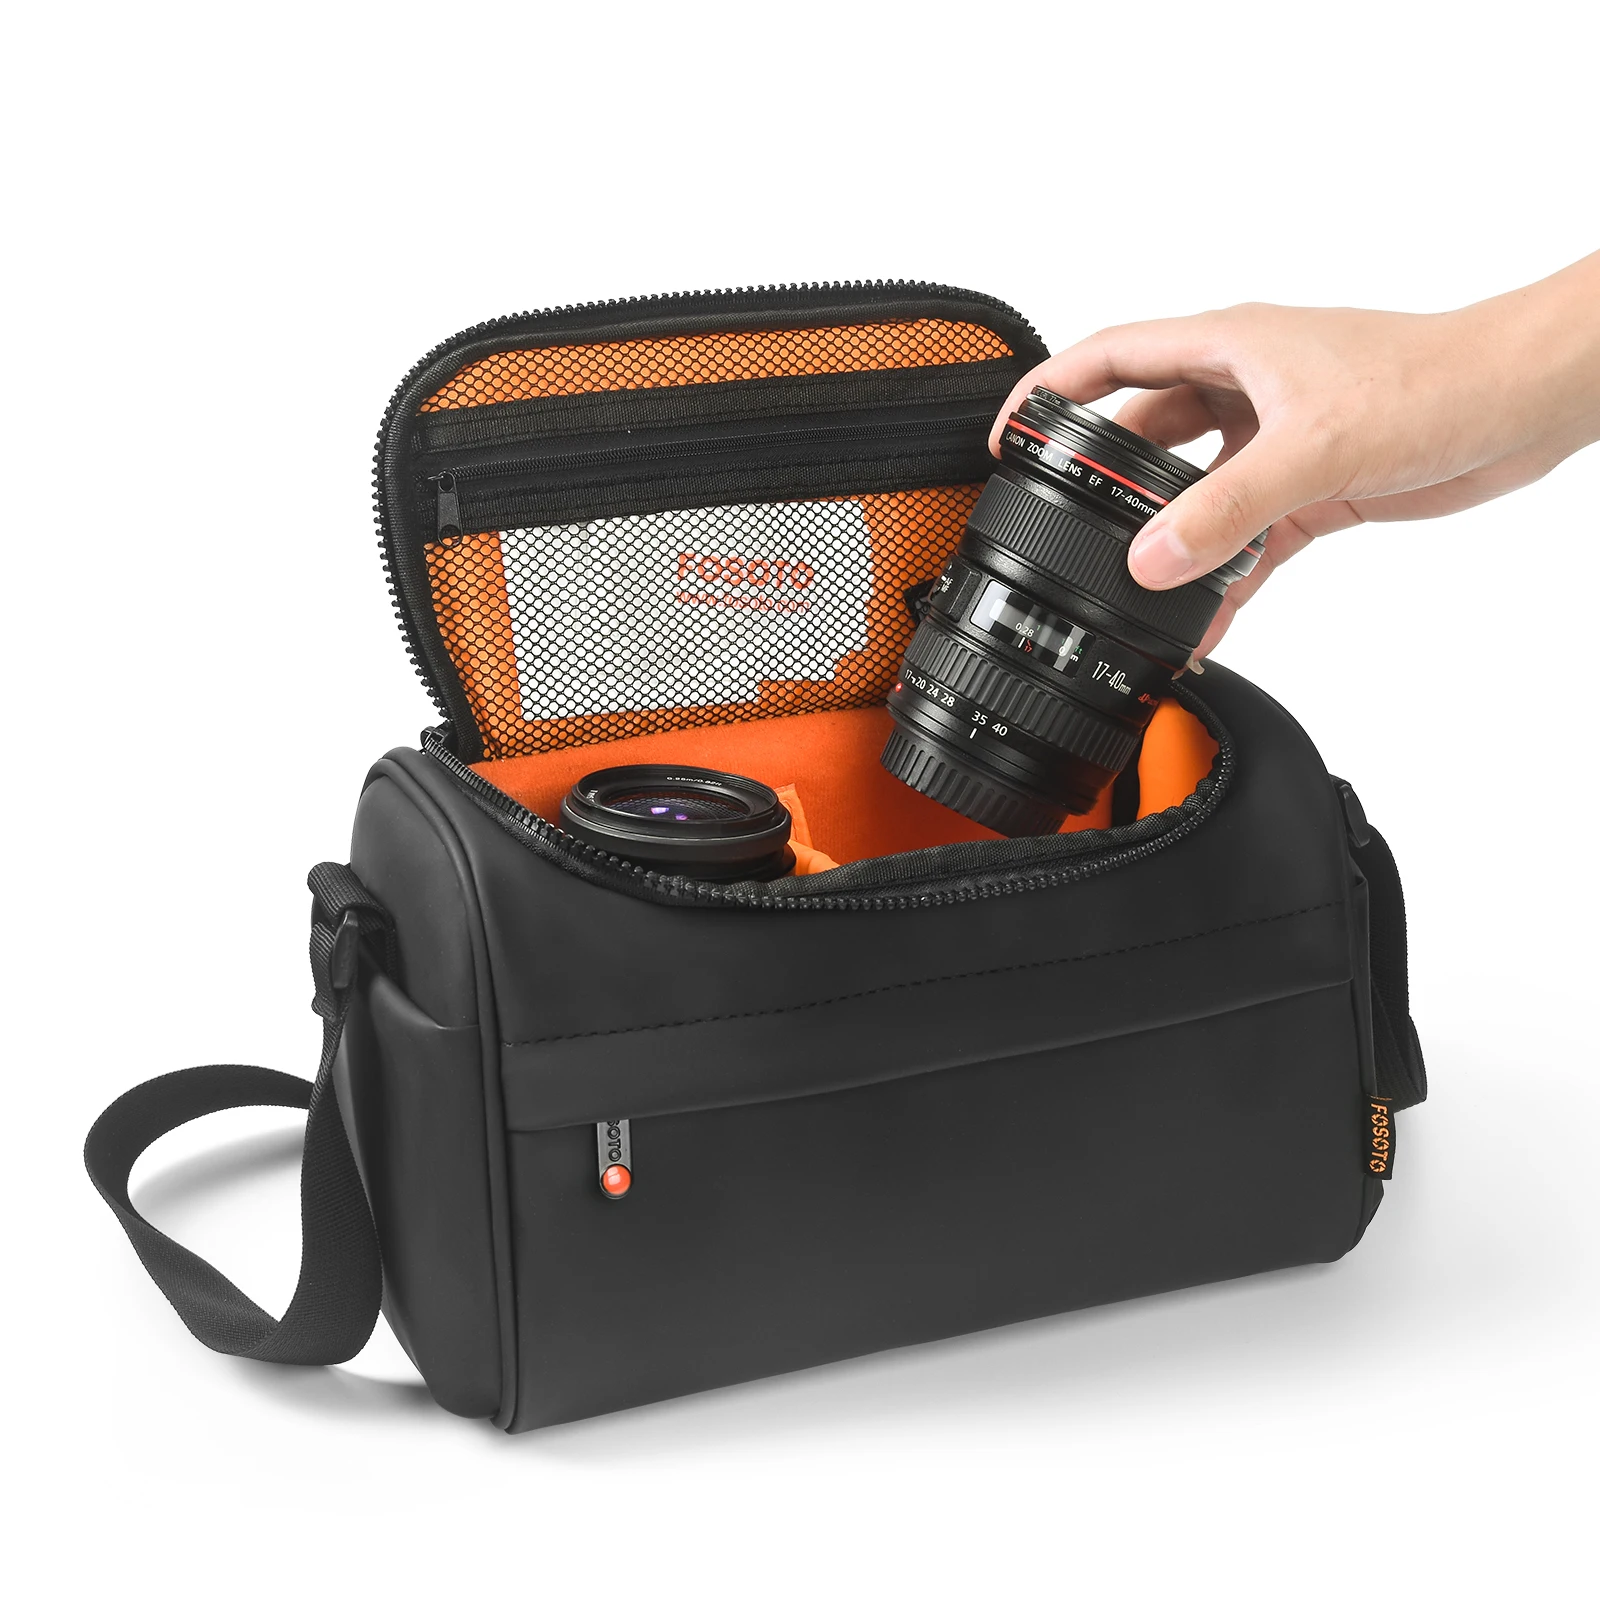 

FOSOTO B750 Camera Bag Leather Case Waterproof Digital DSLR Camera shoulder Bag For DSLR Camera Bag Lens Nikon Canon Sony